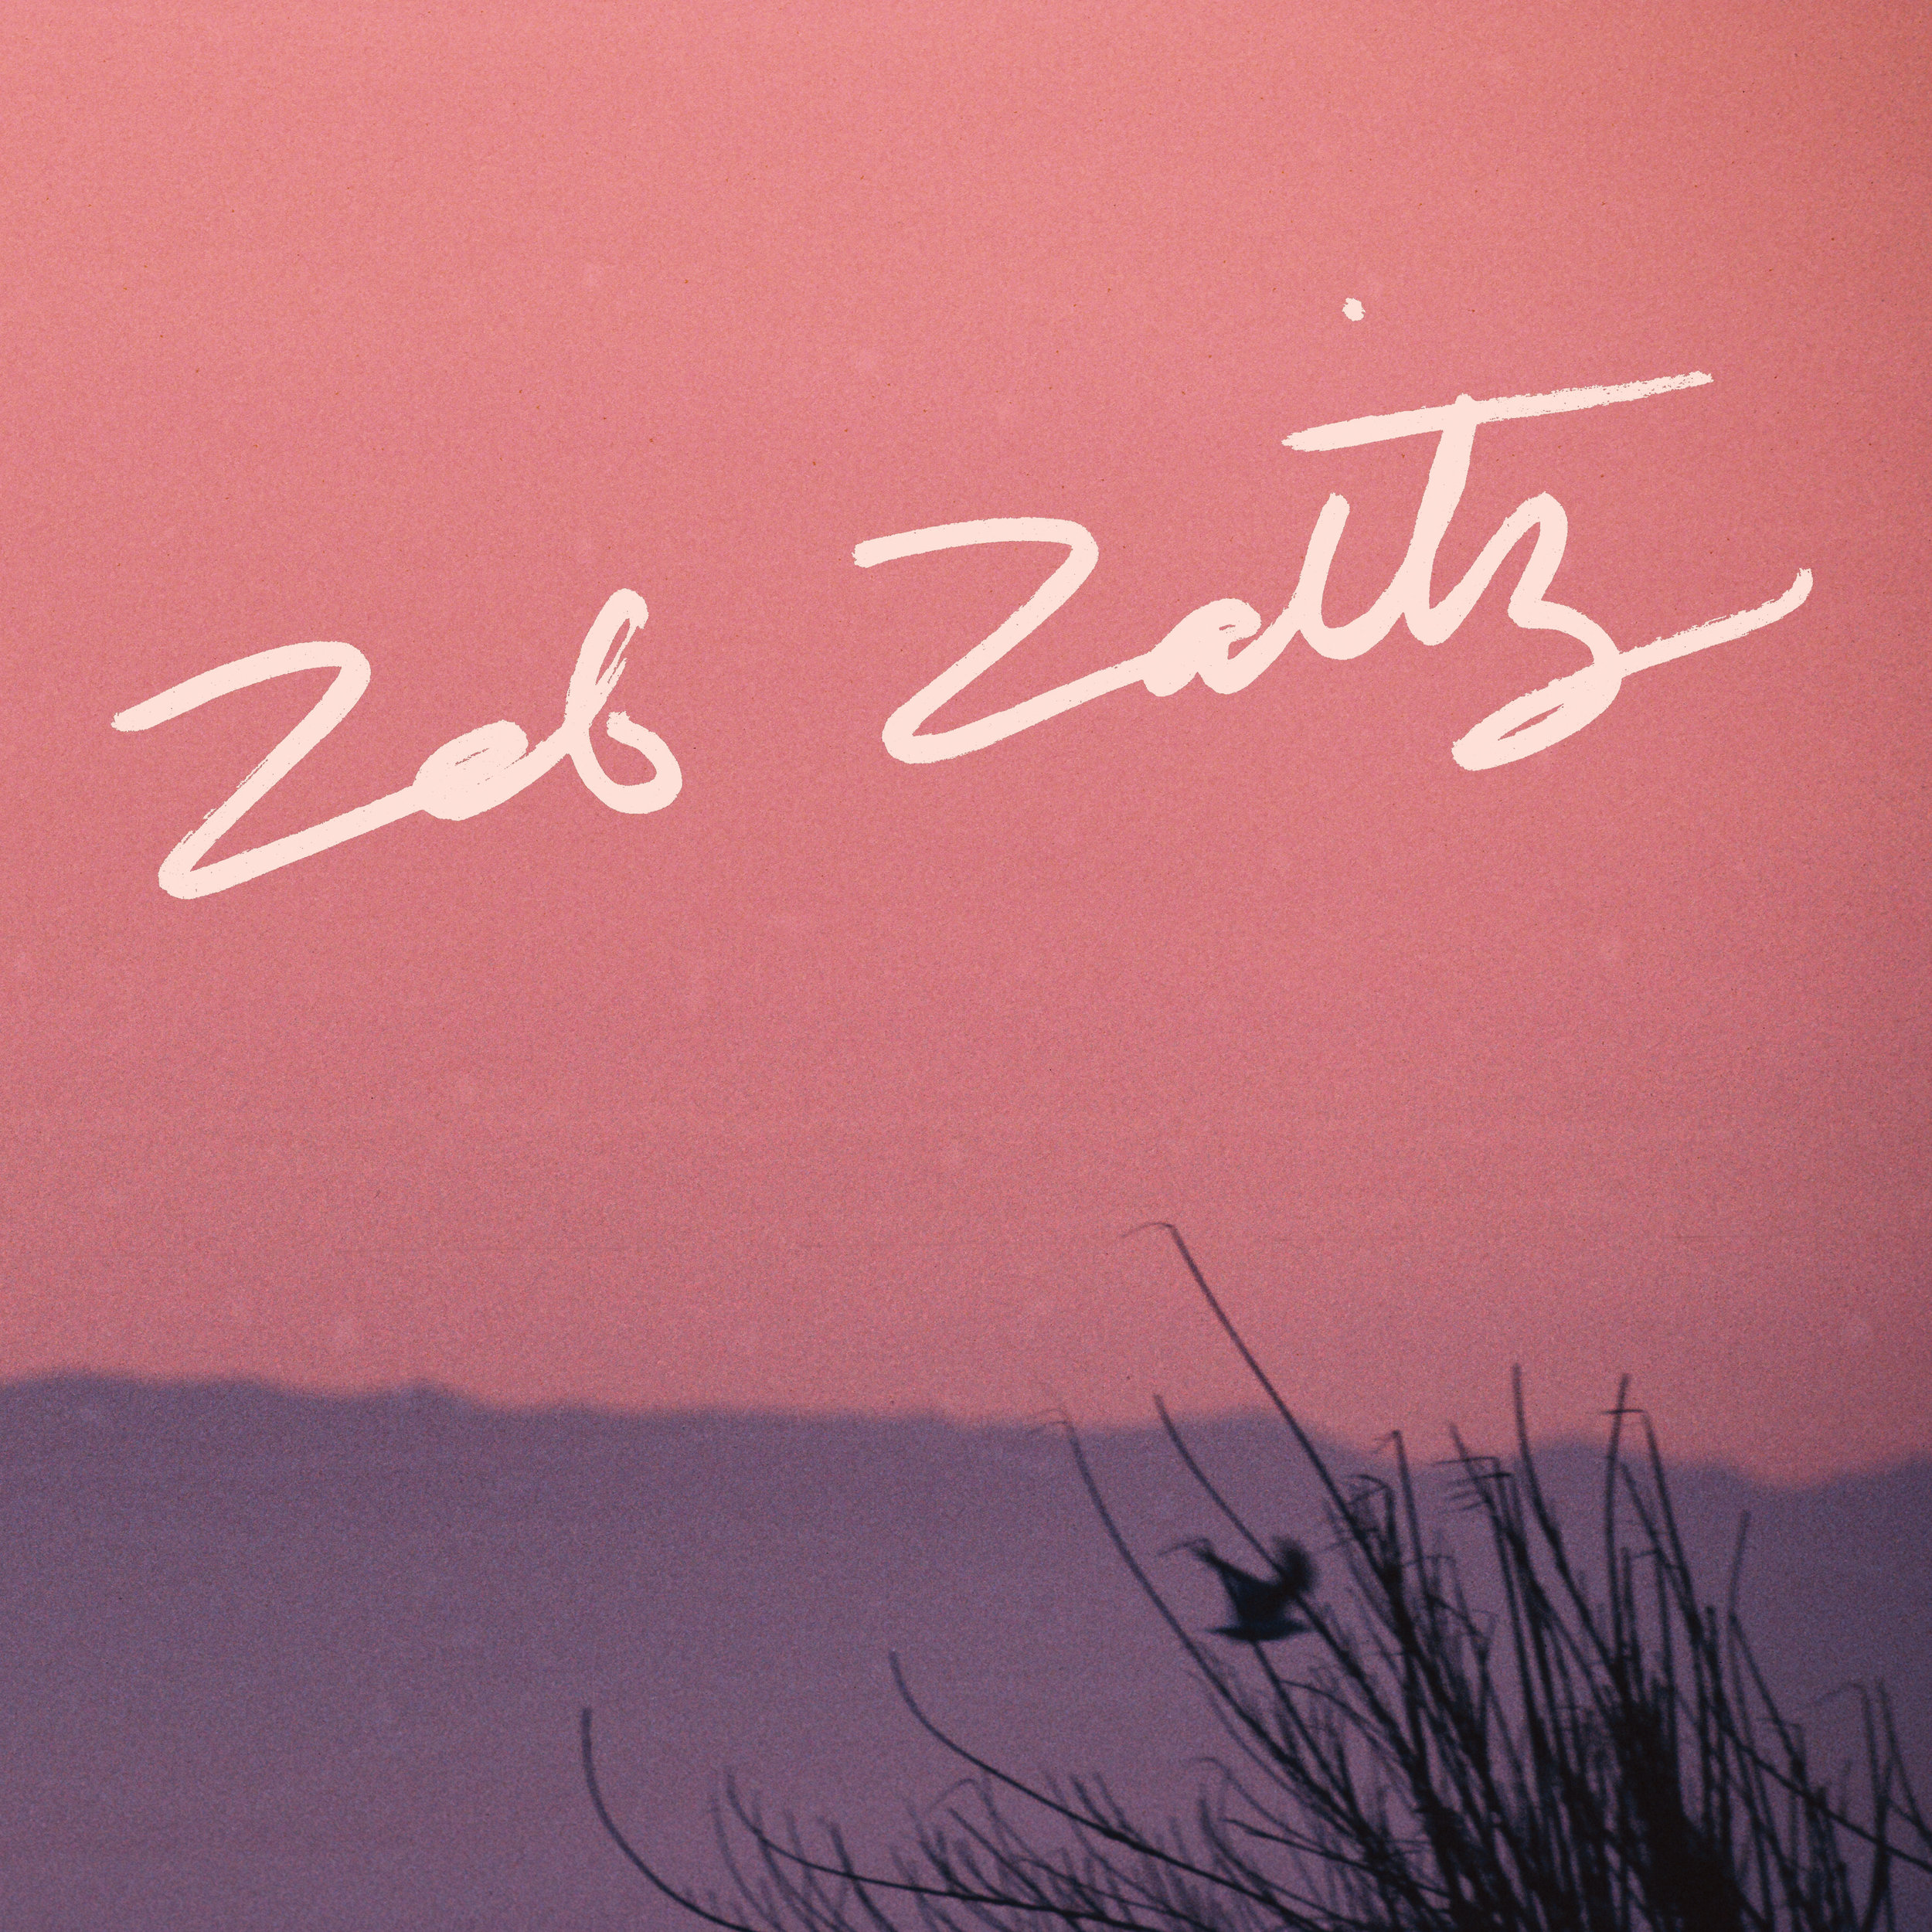   Hand-Lettered Album Title for Zeb Zaitz (Royal Oakie)  